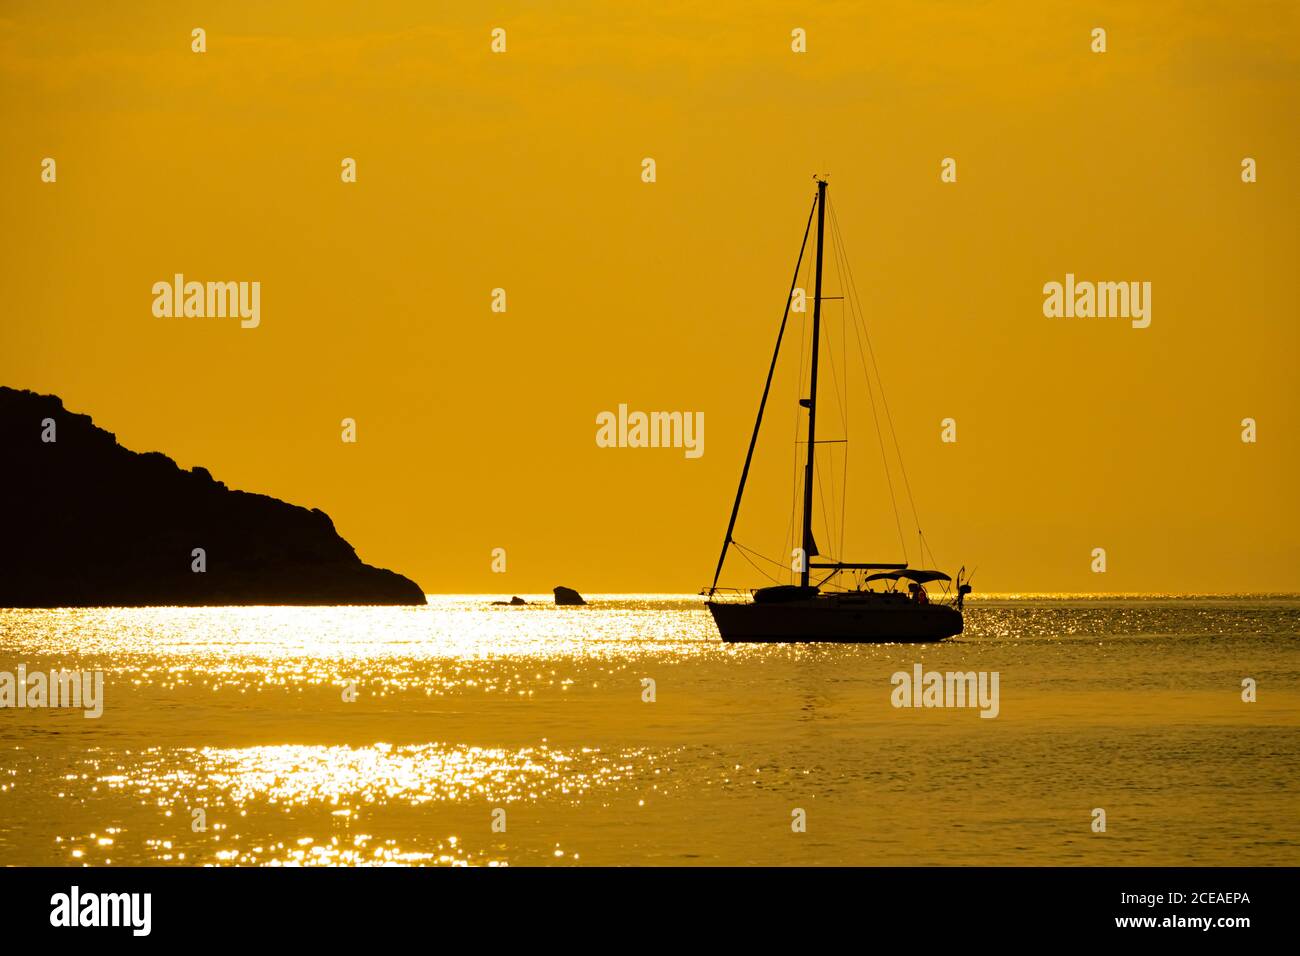 Magnifique voilier naviguant sur mer Méditerranée horizon océan coucher de soleil Banque D'Images